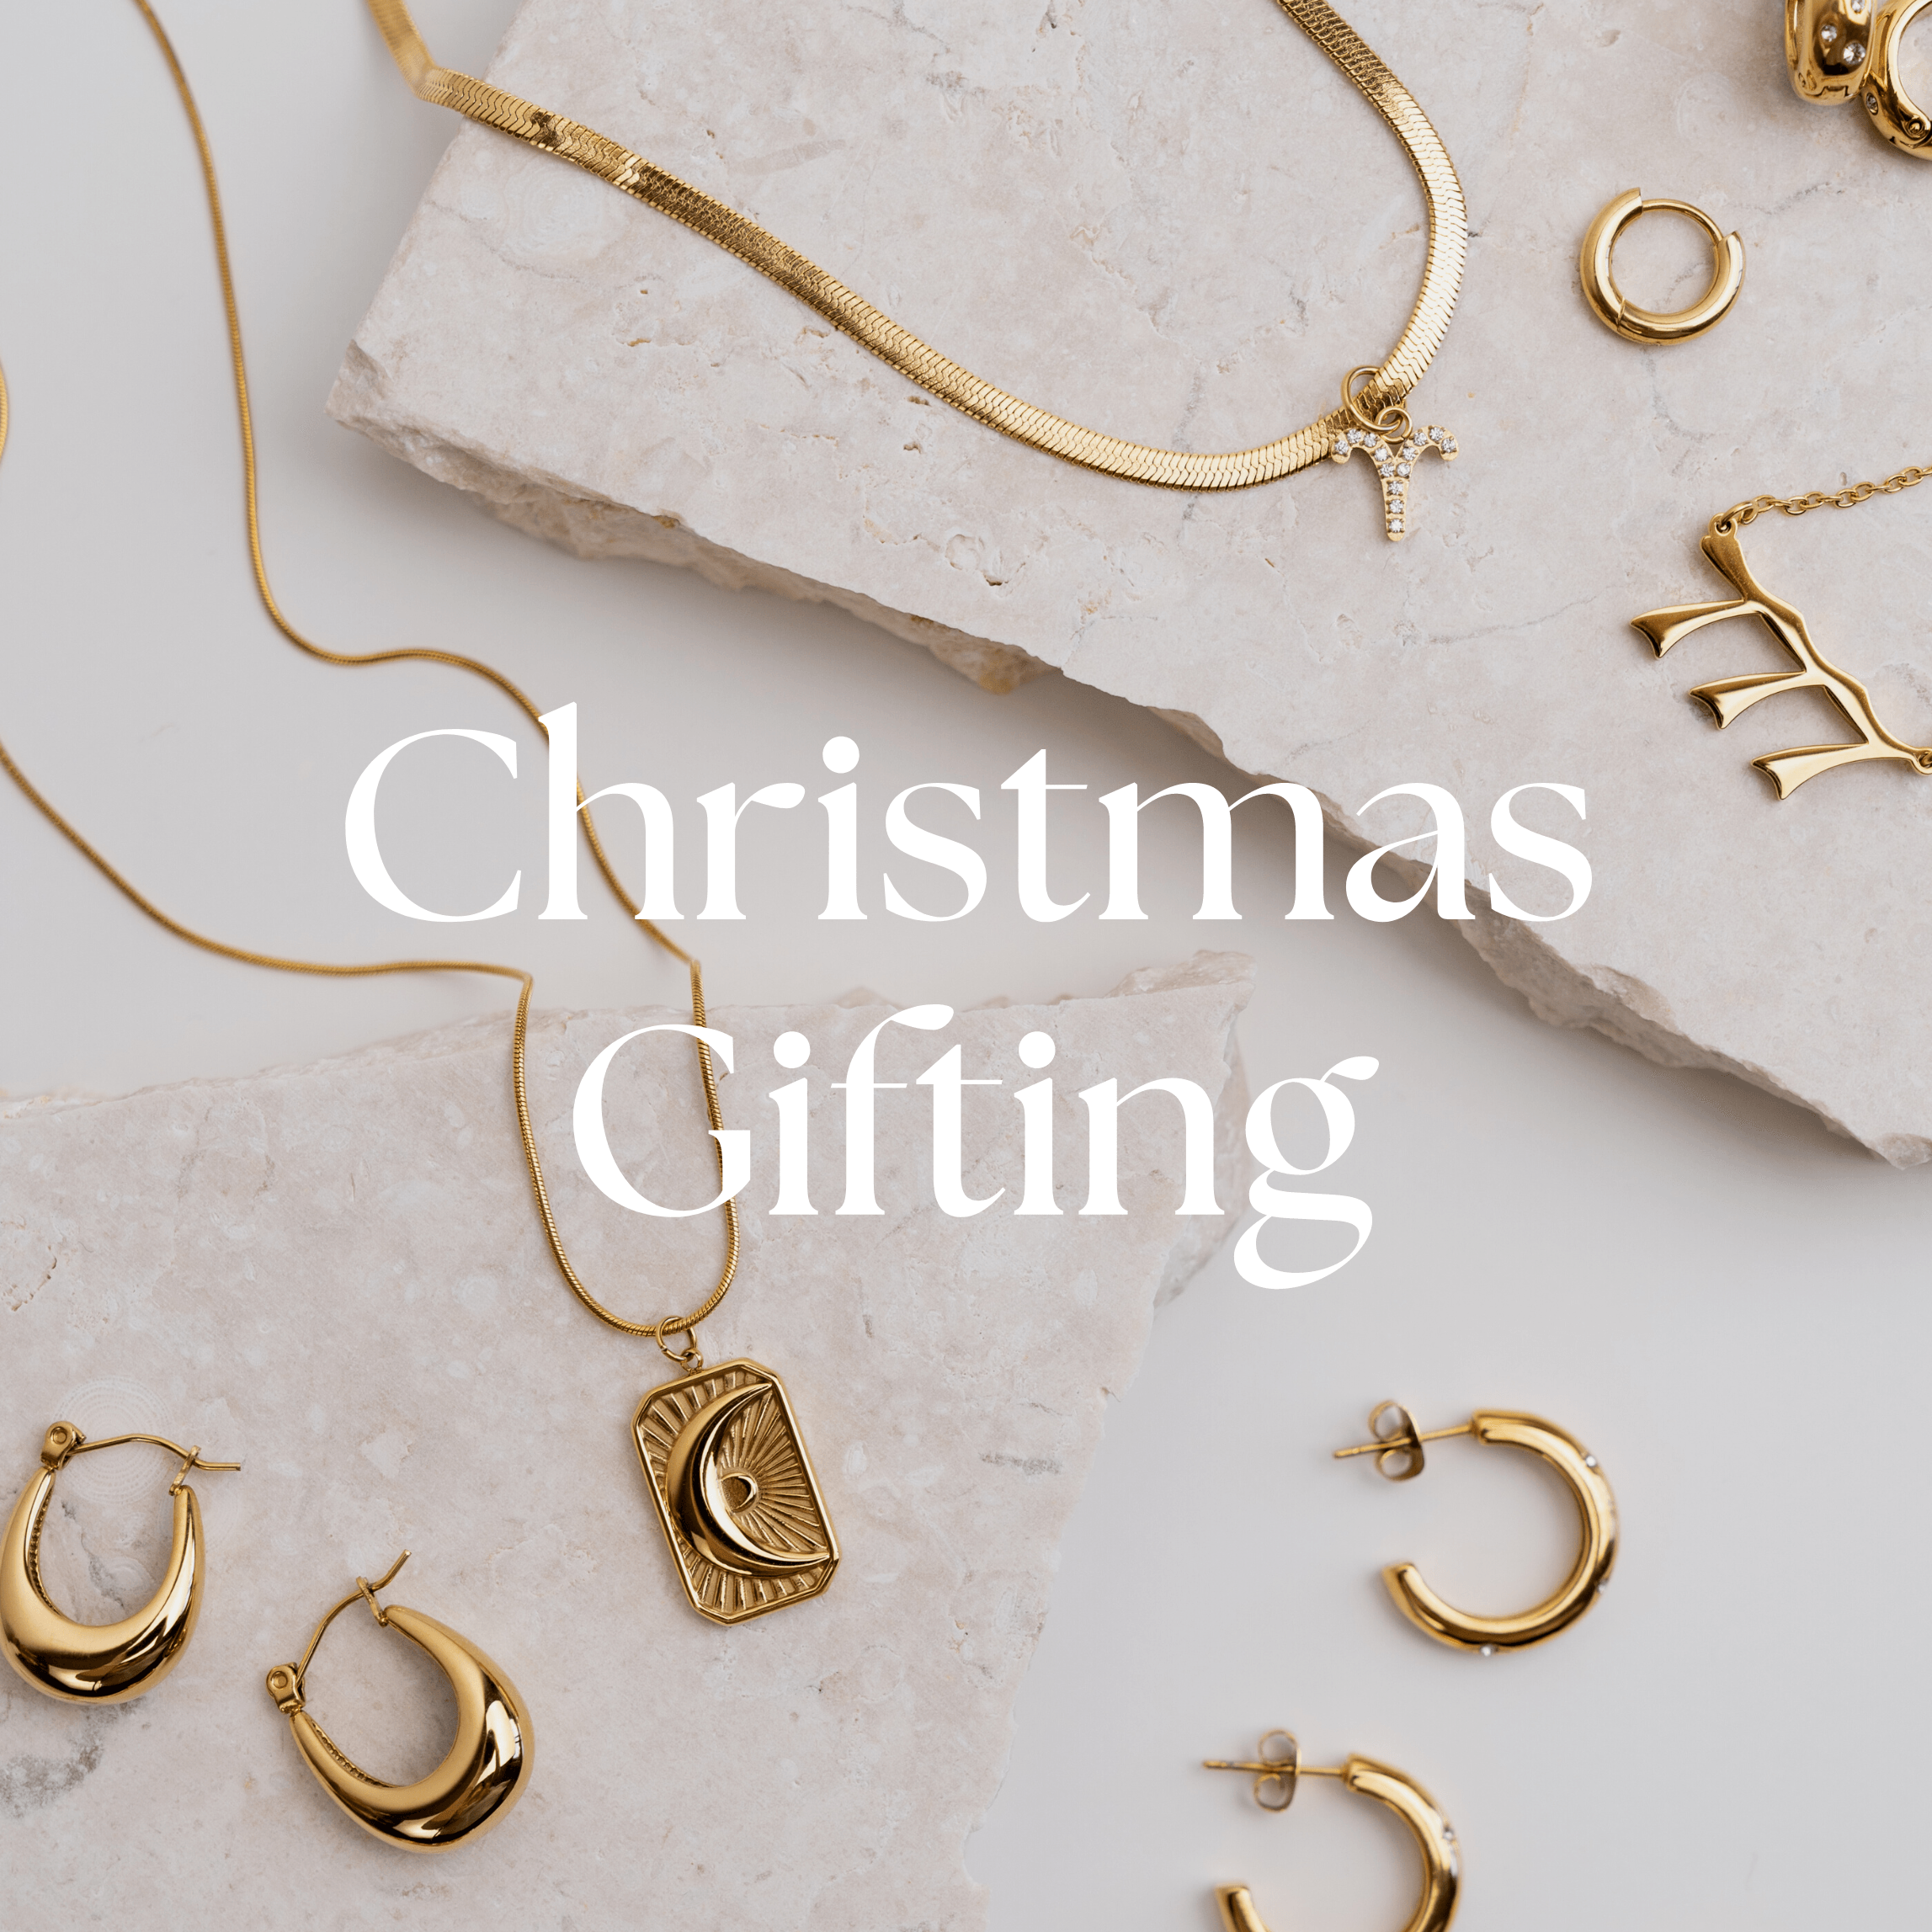 Christmas Gifting - La Musa Jewellery